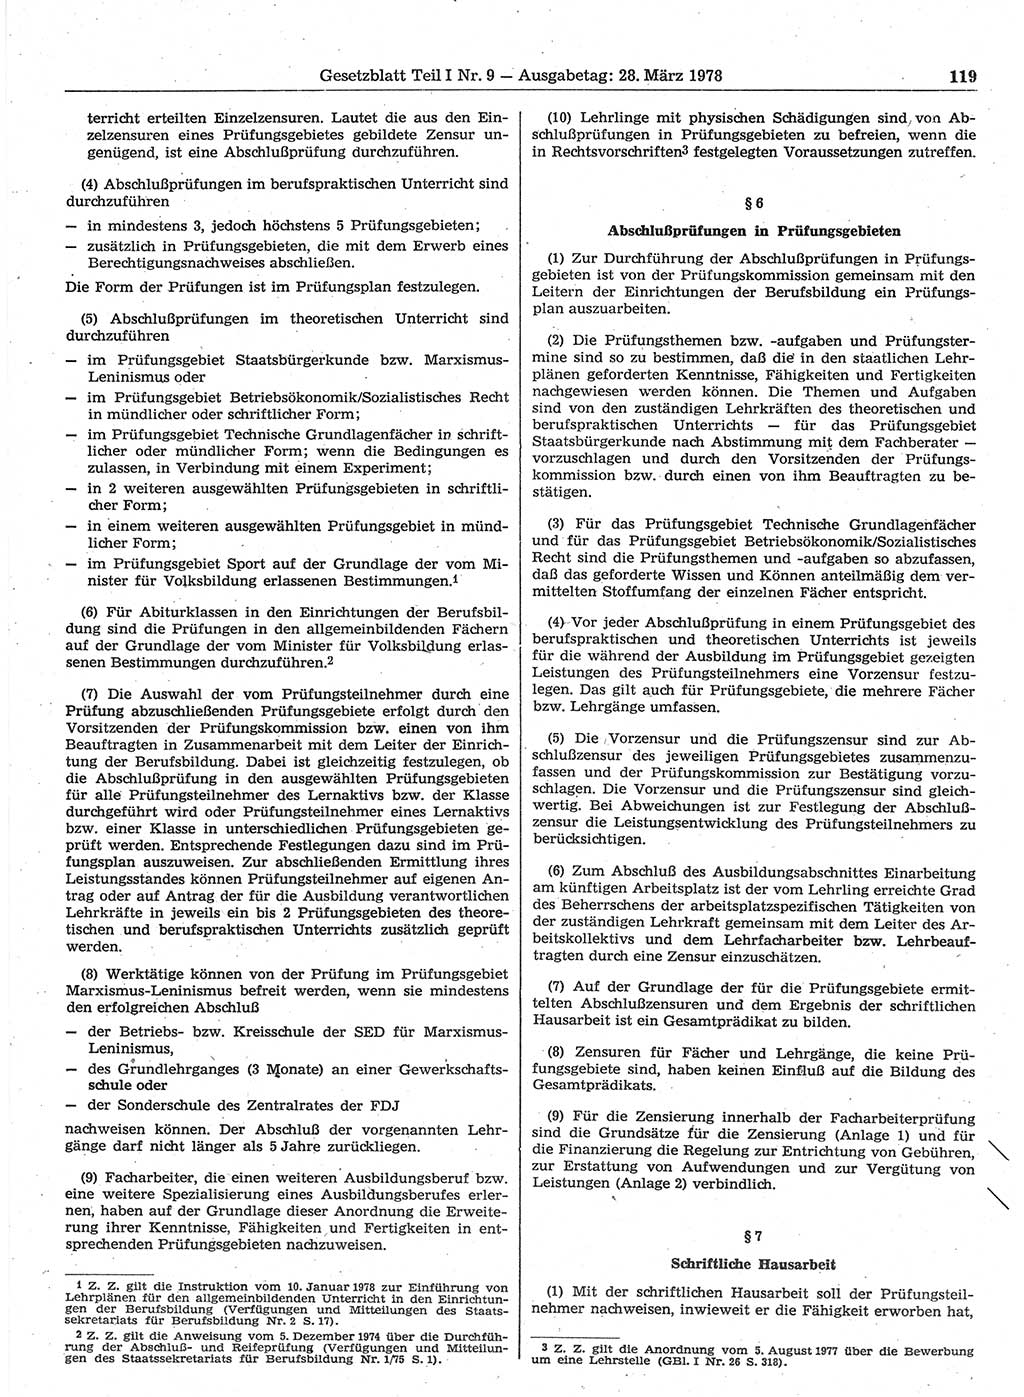 Gesetzblatt (GBl.) der Deutschen Demokratischen Republik (DDR) Teil Ⅰ 1978, Seite 119 (GBl. DDR Ⅰ 1978, S. 119)